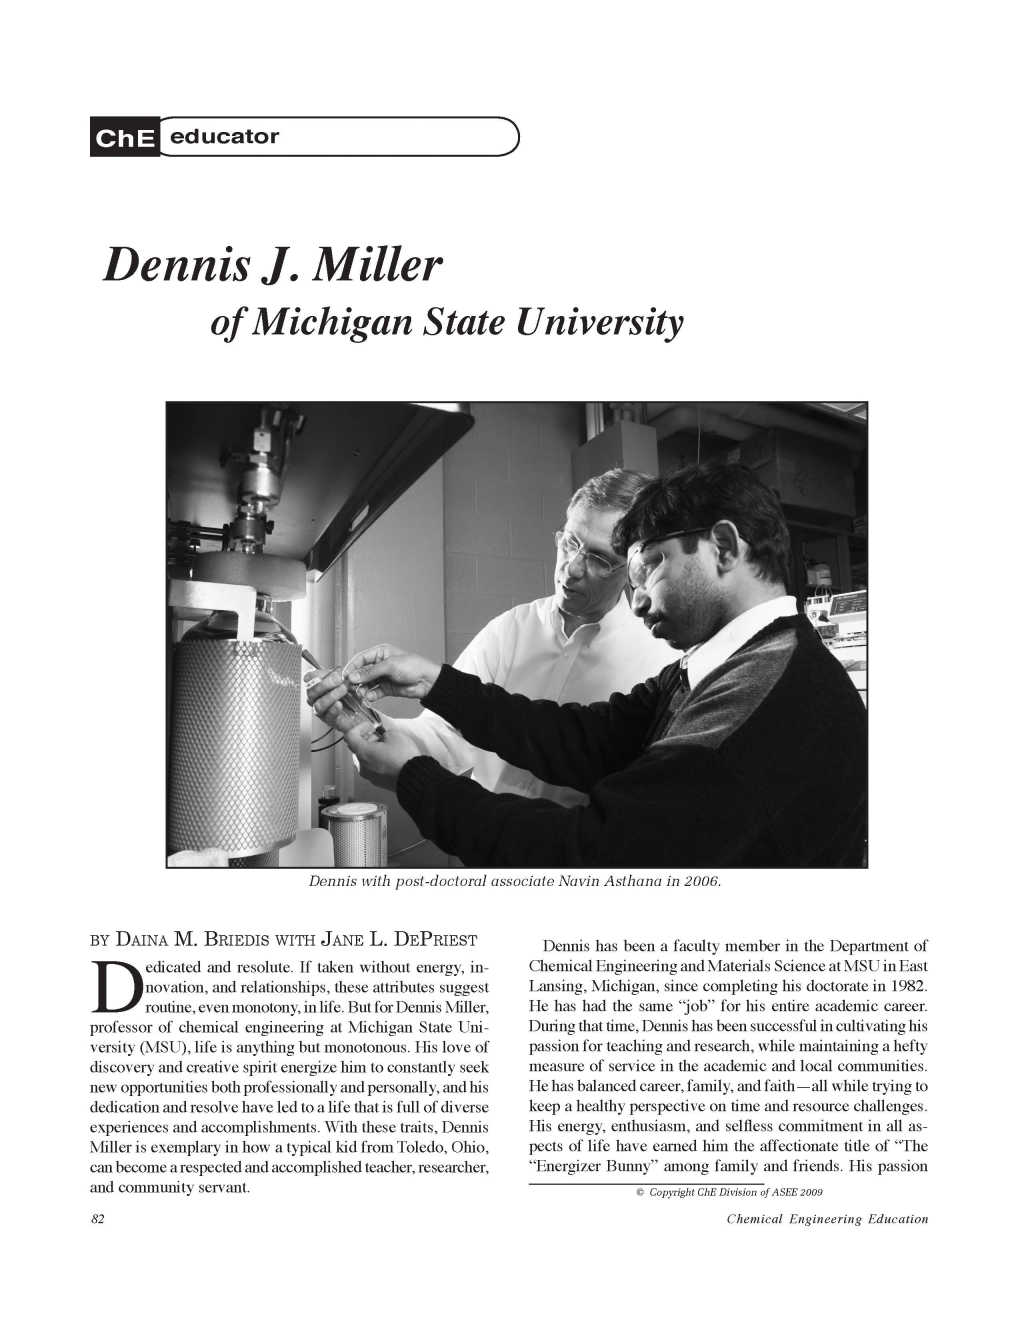 Dennis J. Miller of Michigan State University